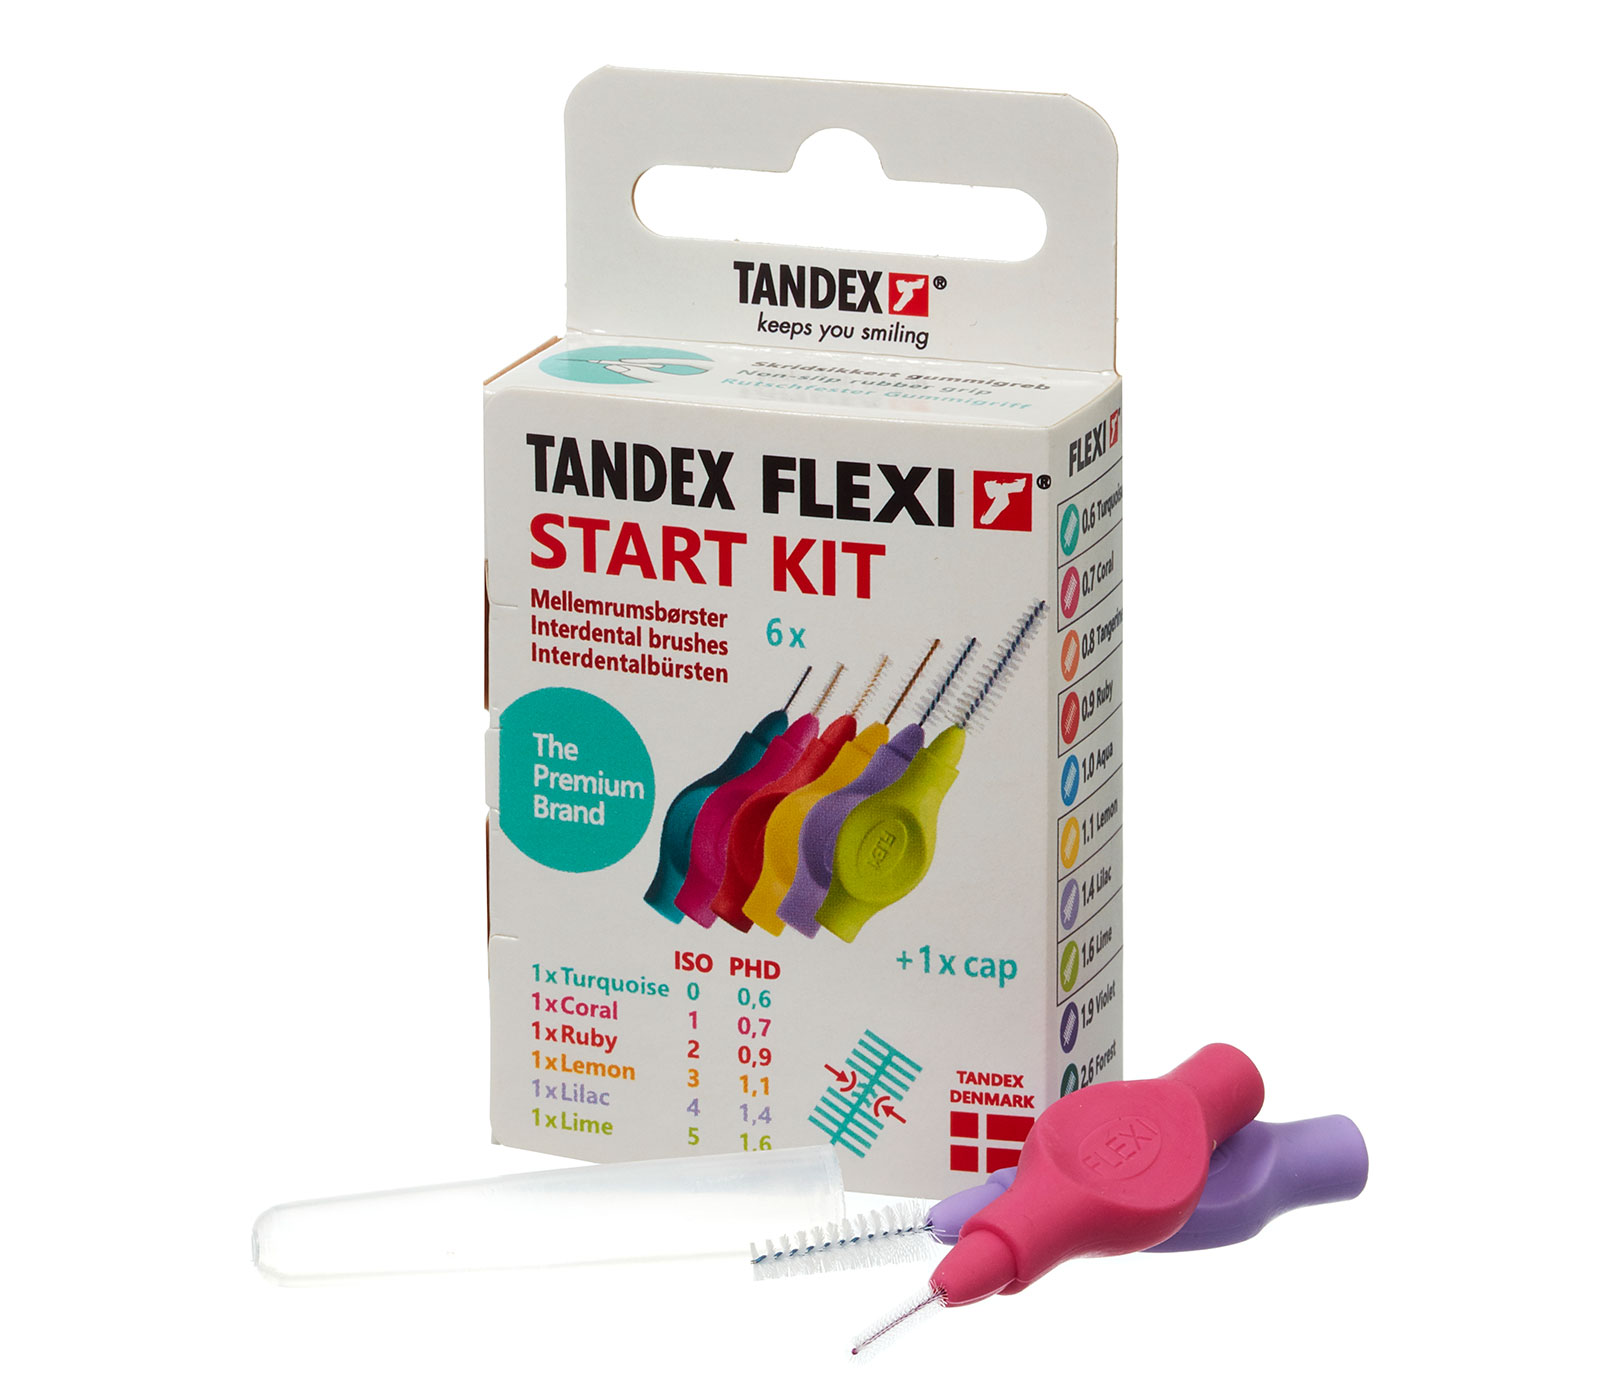 TANDEX_FLEXI_StartKit_and_sidefold-box_web